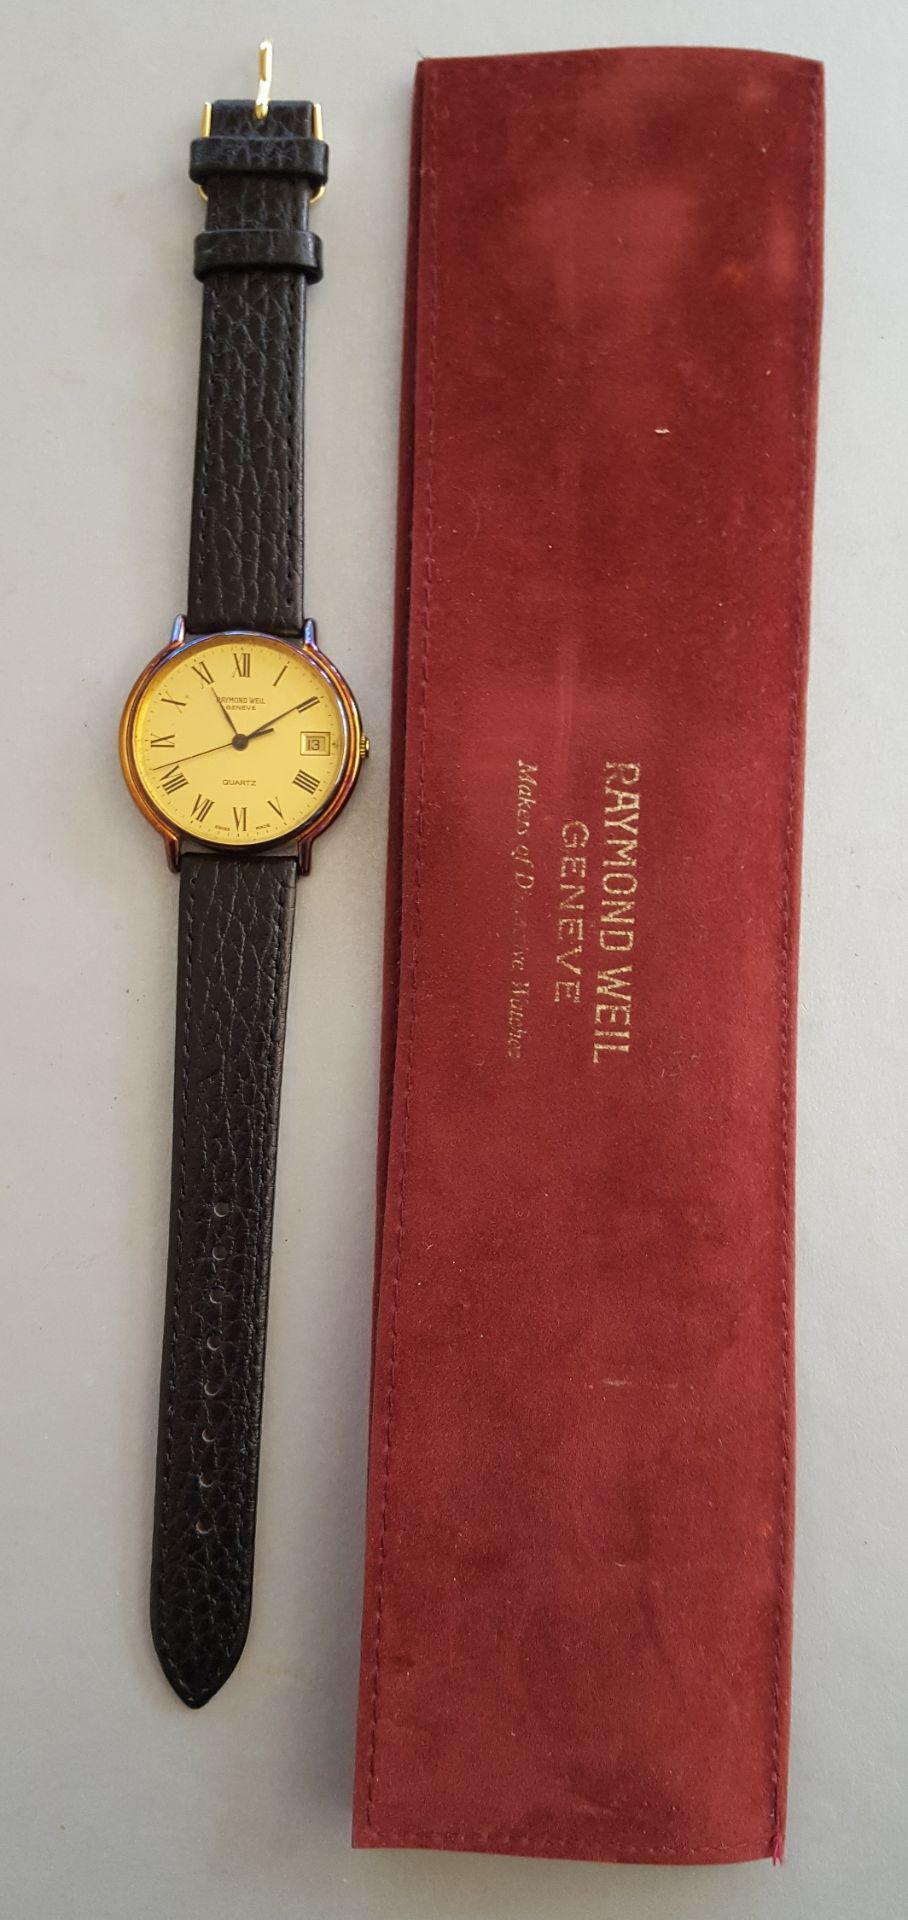 Vintage Retro Raymond Weil Wrist Watch No. 9605 Dated 1982.